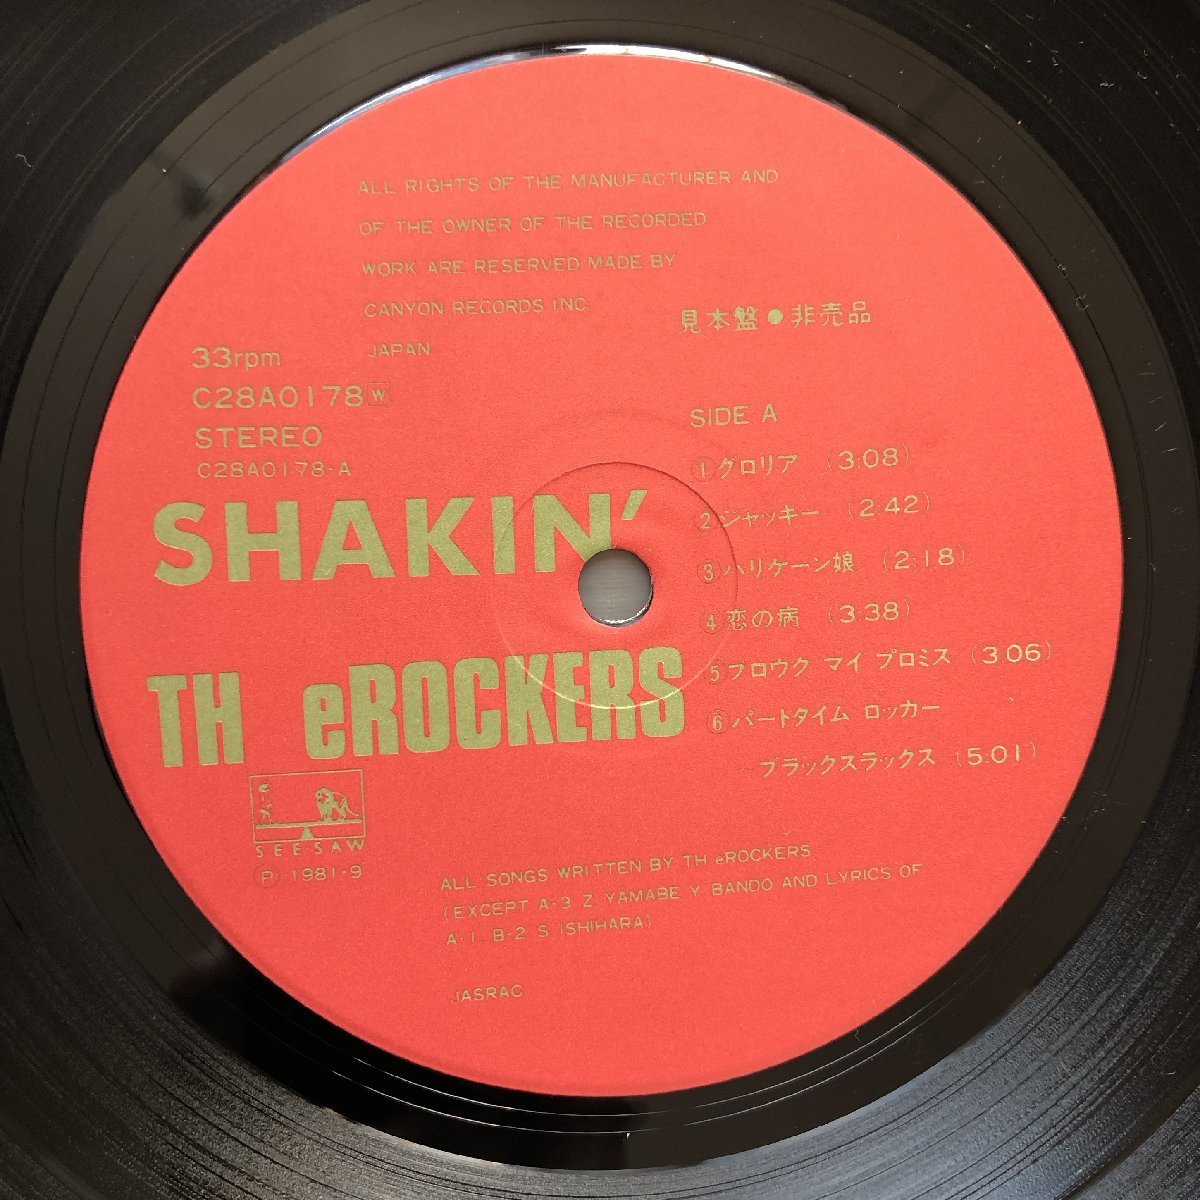 傷なし美盤 美ジャケ 1981年 オリジナル盤 ザ・ロッカーズ TH eROCKERS LPレコード シェイキン Shakin' 帯付 J-Rock 陣内孝則 マト両1A1の画像7